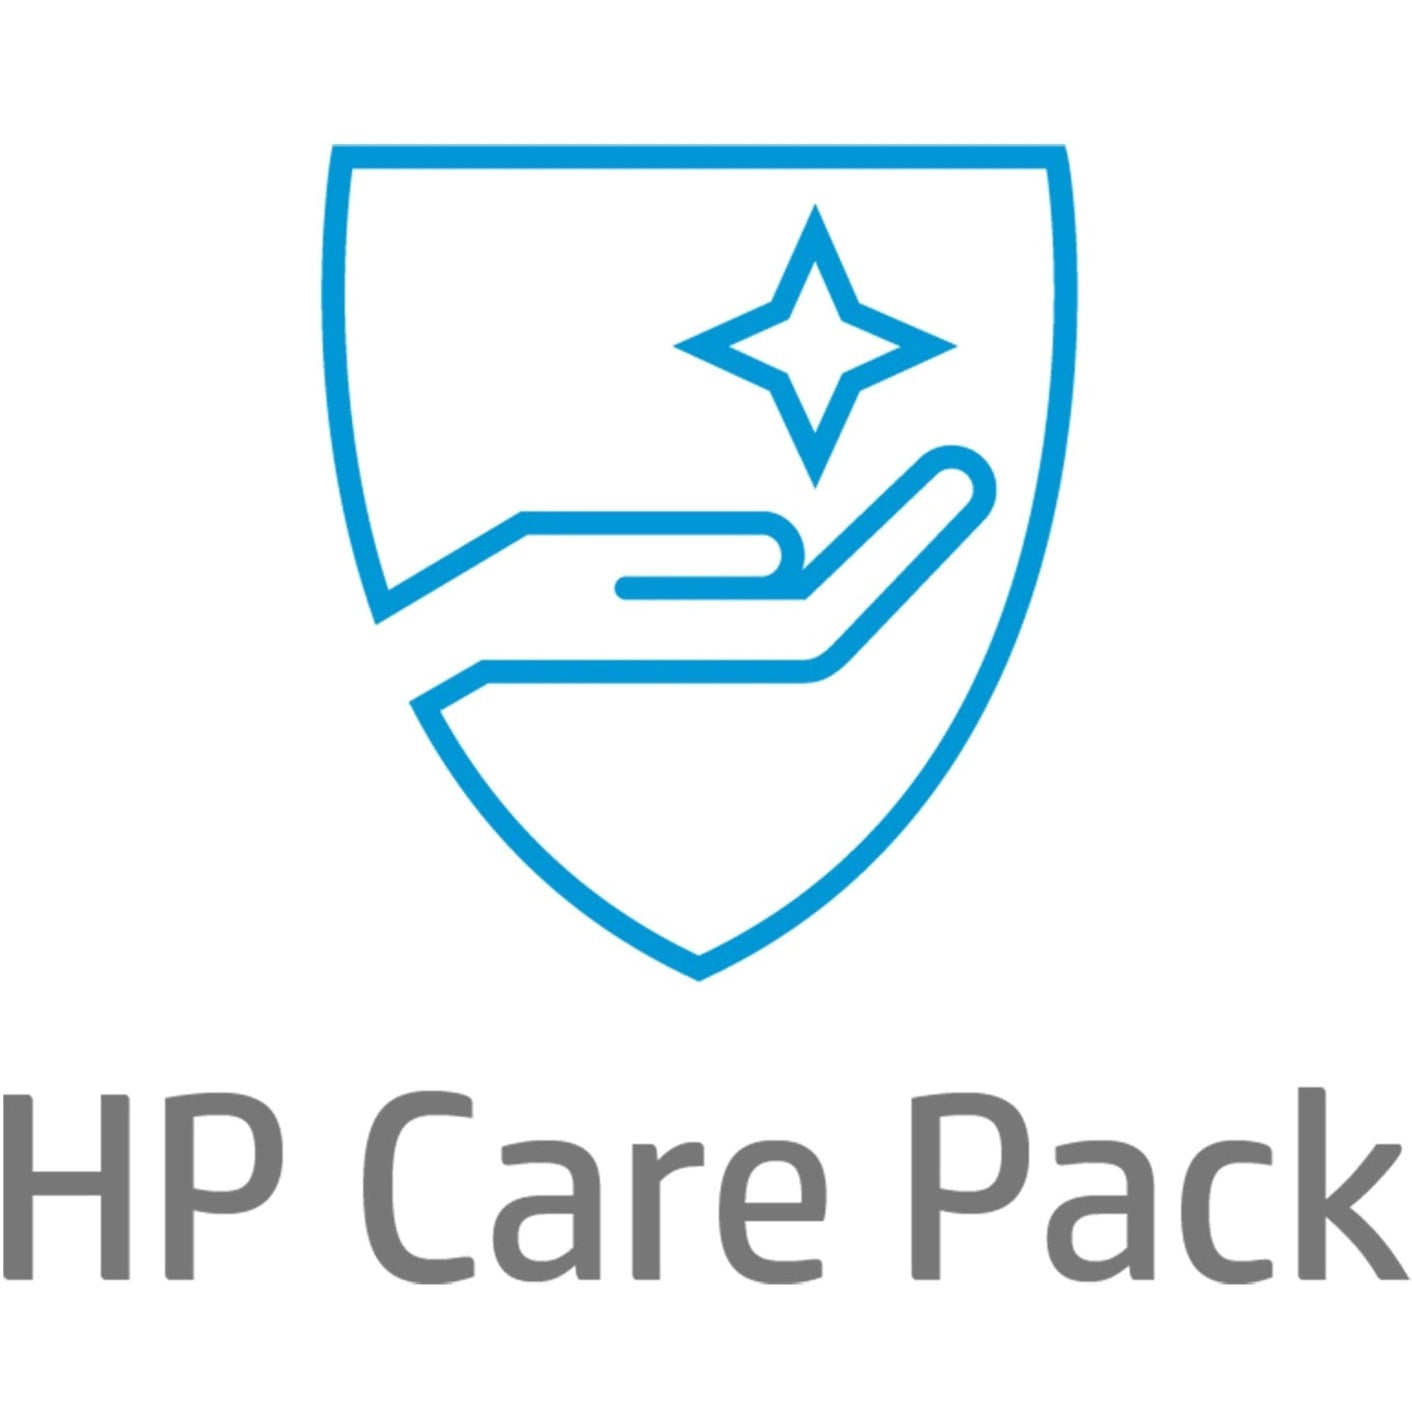 HP Care Pack - 3 Year - Service (U8LK6E)